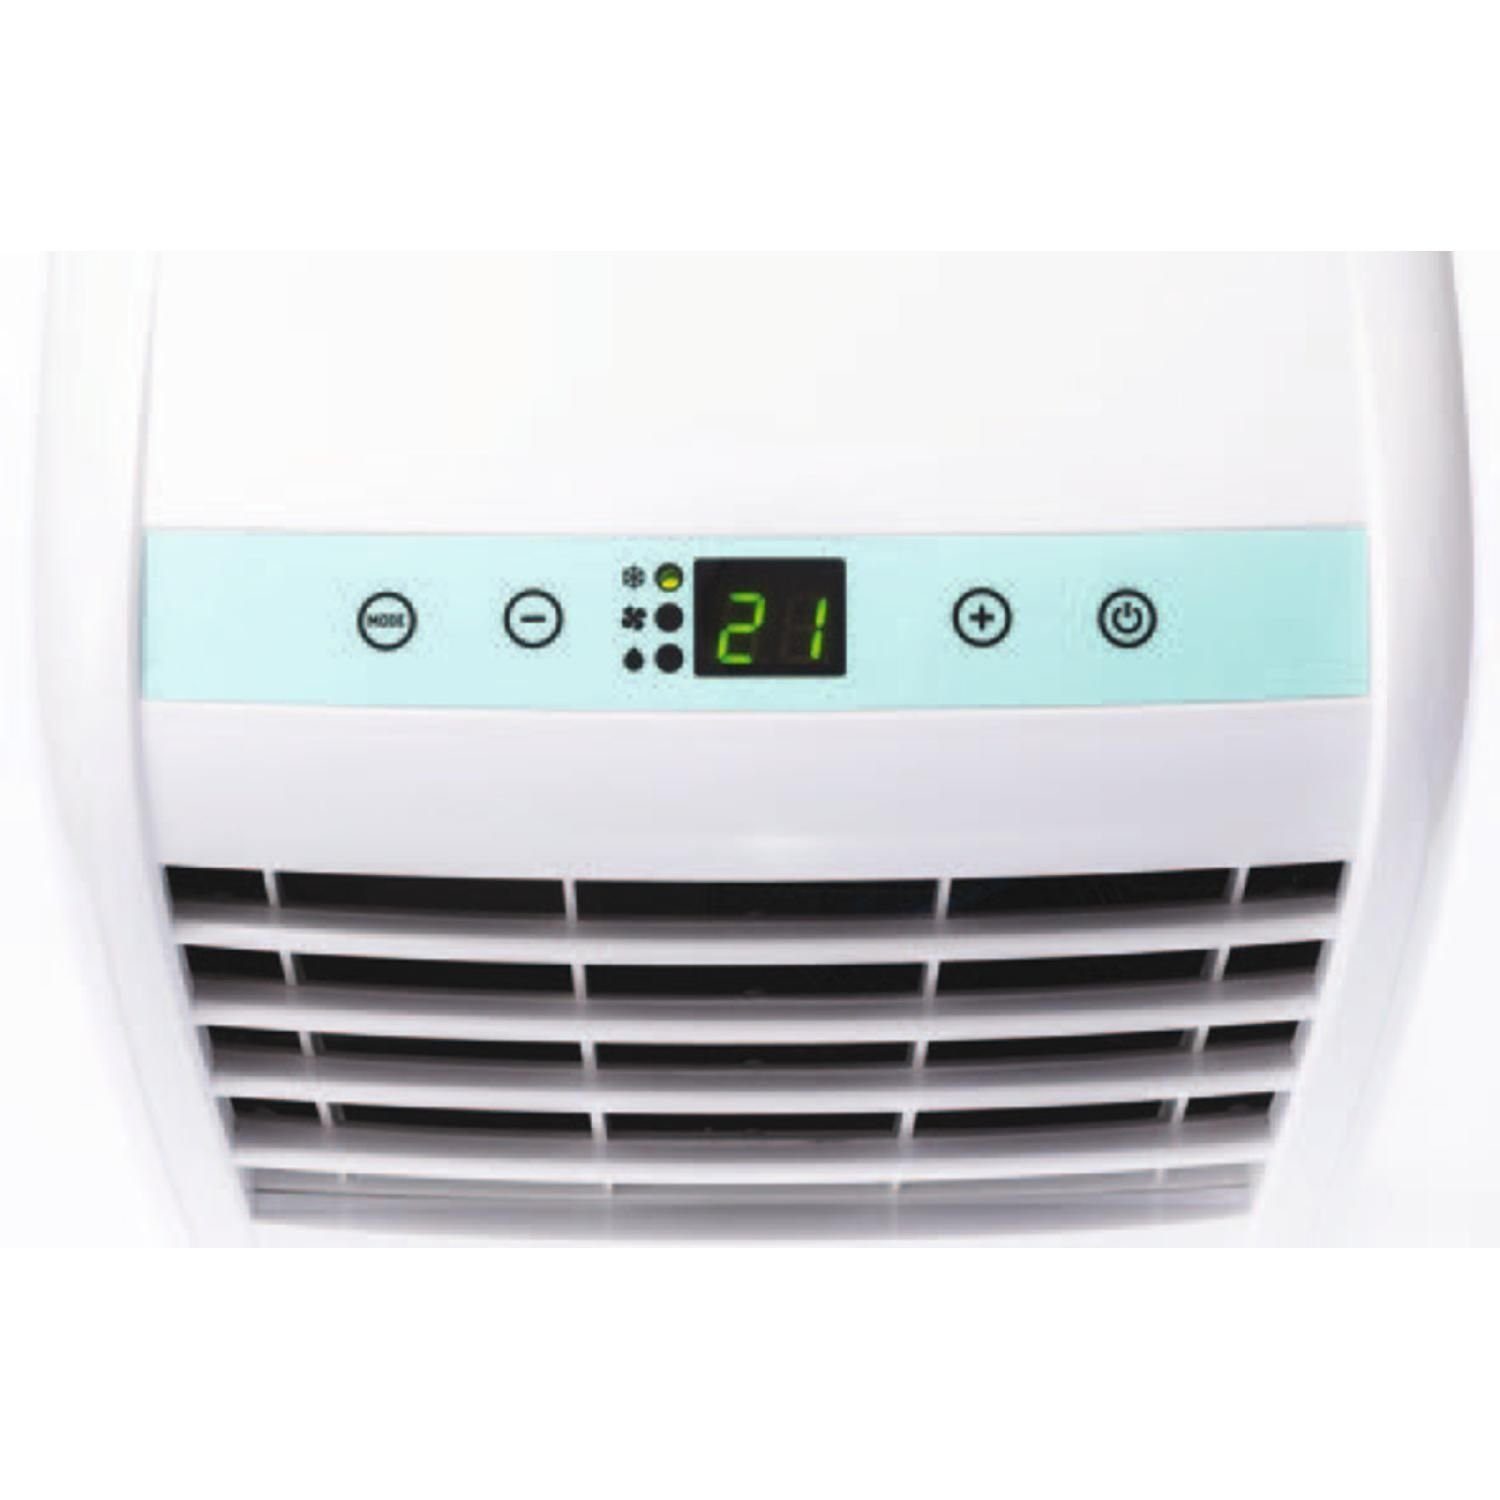 OLIMPIA SPLENDID Klimagerät BLUE minimale COMPACT DOLCECLIMA Ventilieren, Kühlen, Geräuschentwicklung, tragbar 10 P Klimagerät AIR-TECHNOLOGIE, Entfeuchten